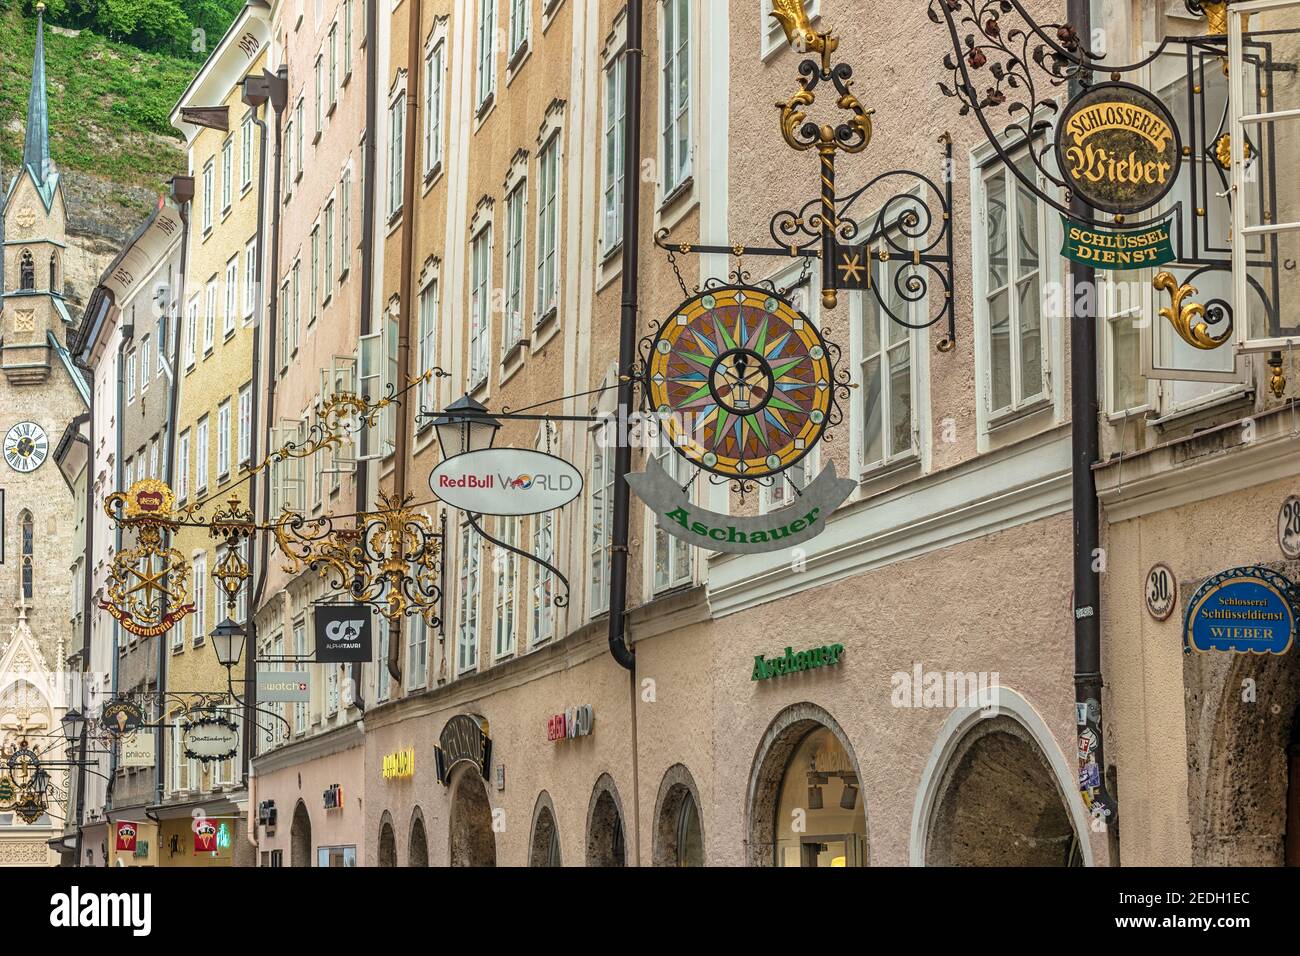 Salisburgo, Austria - Maggio 19,2019 : skyline della città e cartelli in ferro battuto in Via Grain Lane, la famosa via dello shopping di Salisburgo Austria Foto Stock